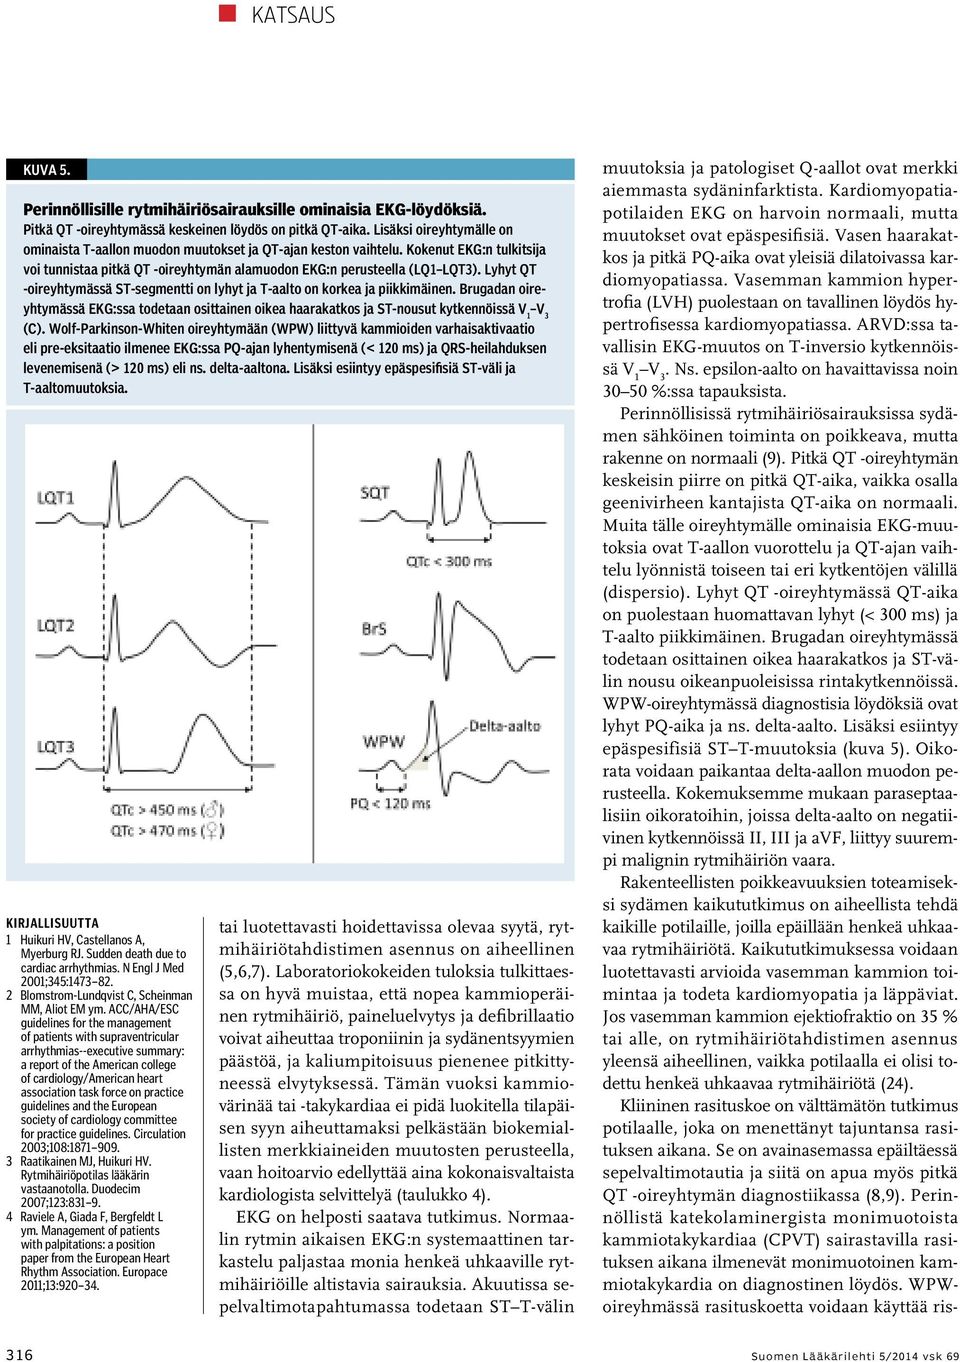 ARVD:ssa tavallisin EKG-muutos on T-inversio kytkennöissä V 1 V 3. Ns. epsilon-aalto on havaittavissa noin 30 50 %:ssa tapauksista.